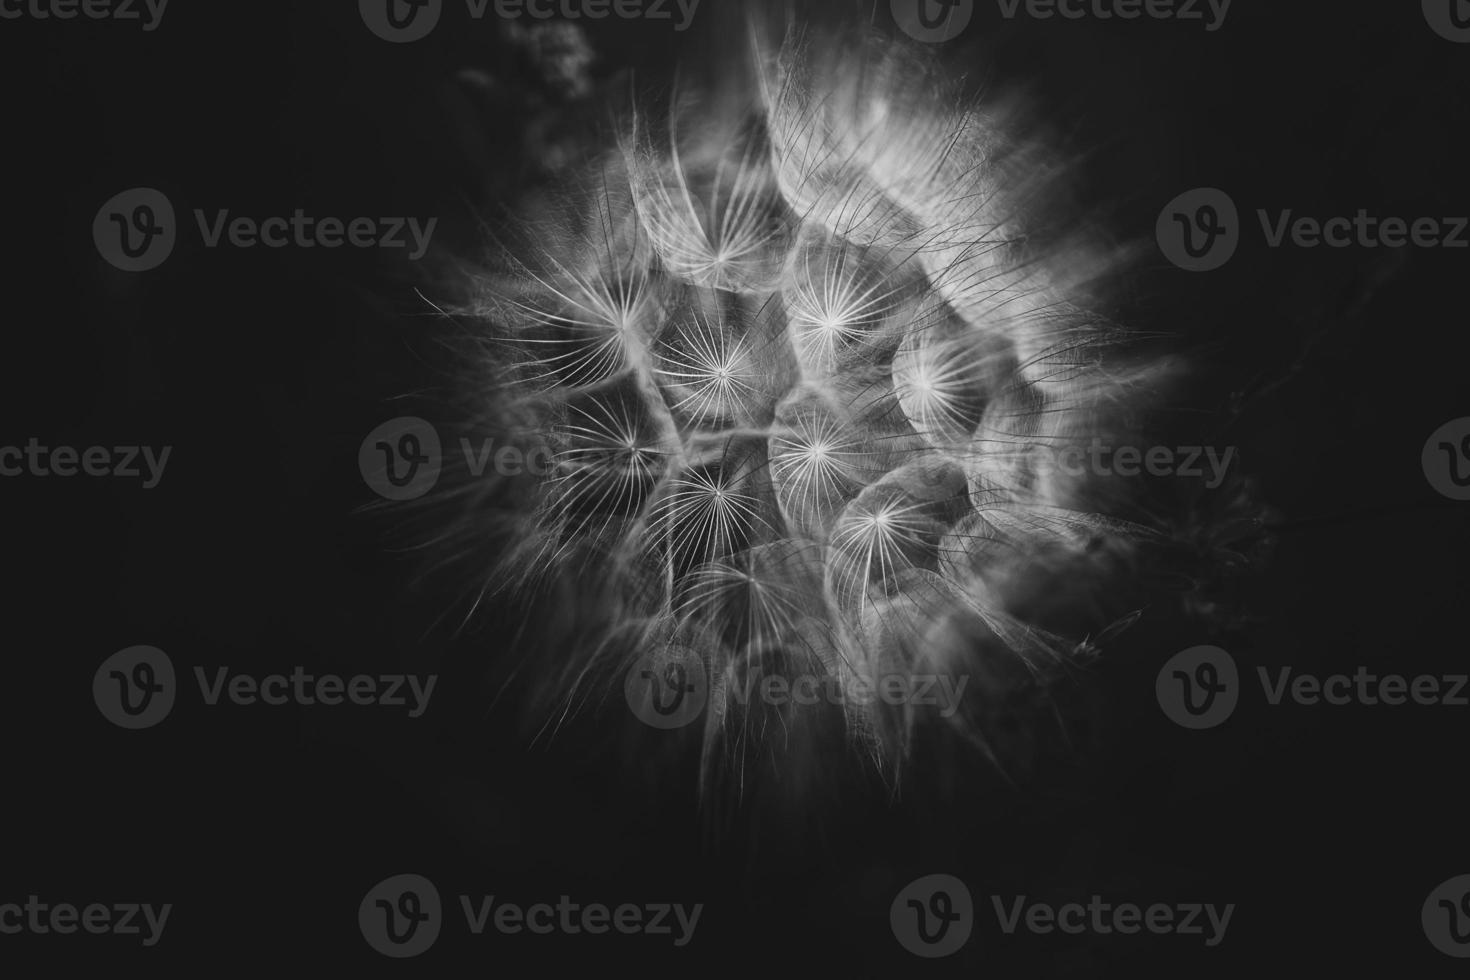 summer dandelion in close-up on a dark background photo